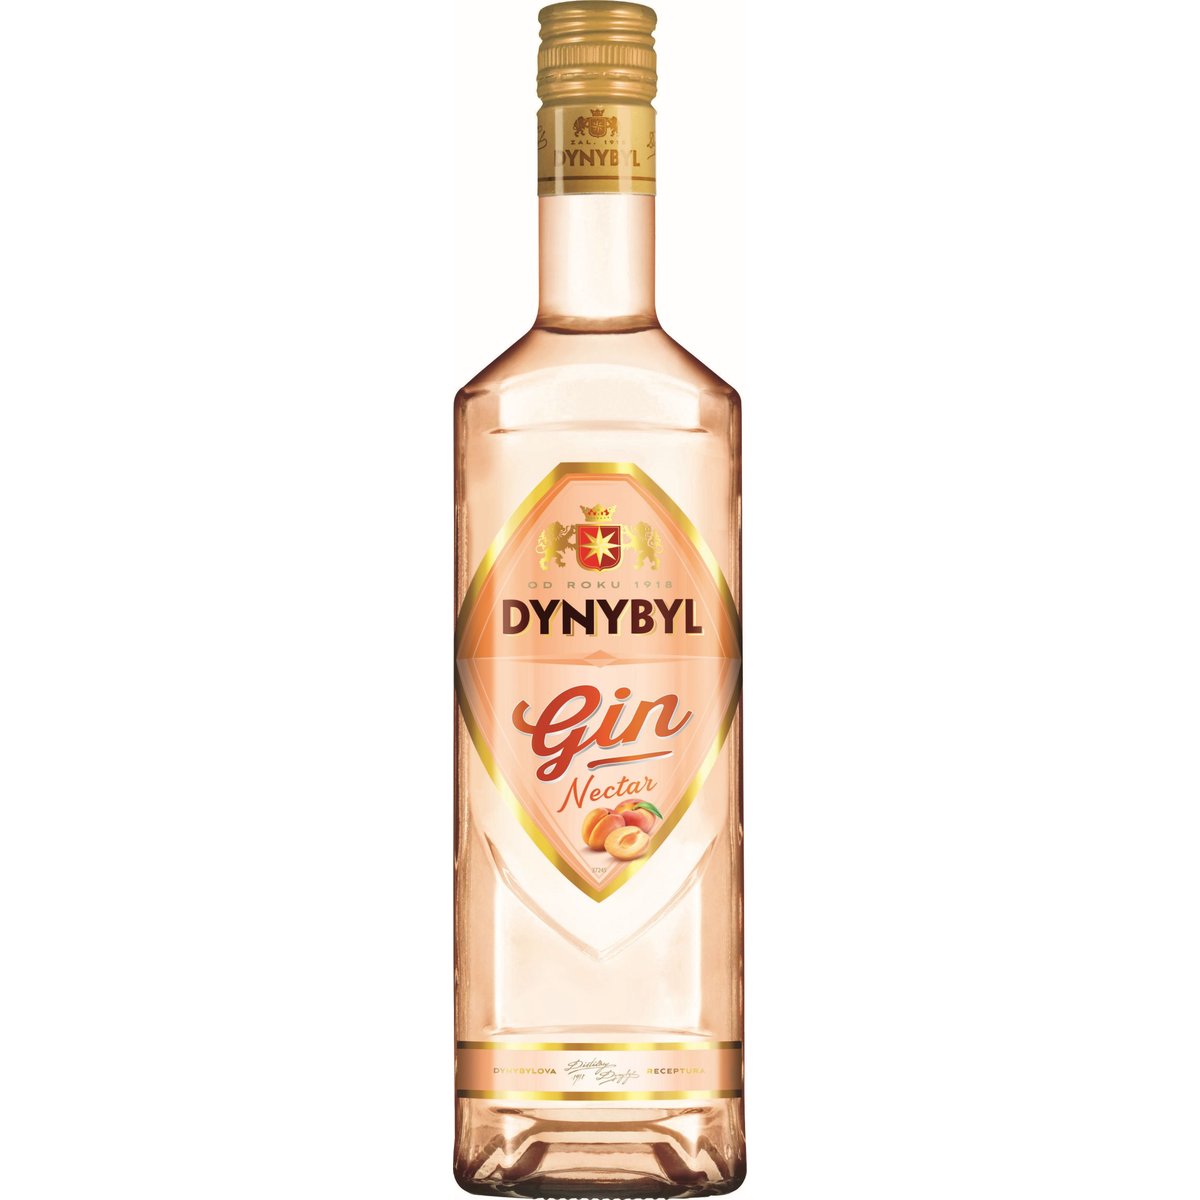 Dynybyl Gin Nectar 37,5%